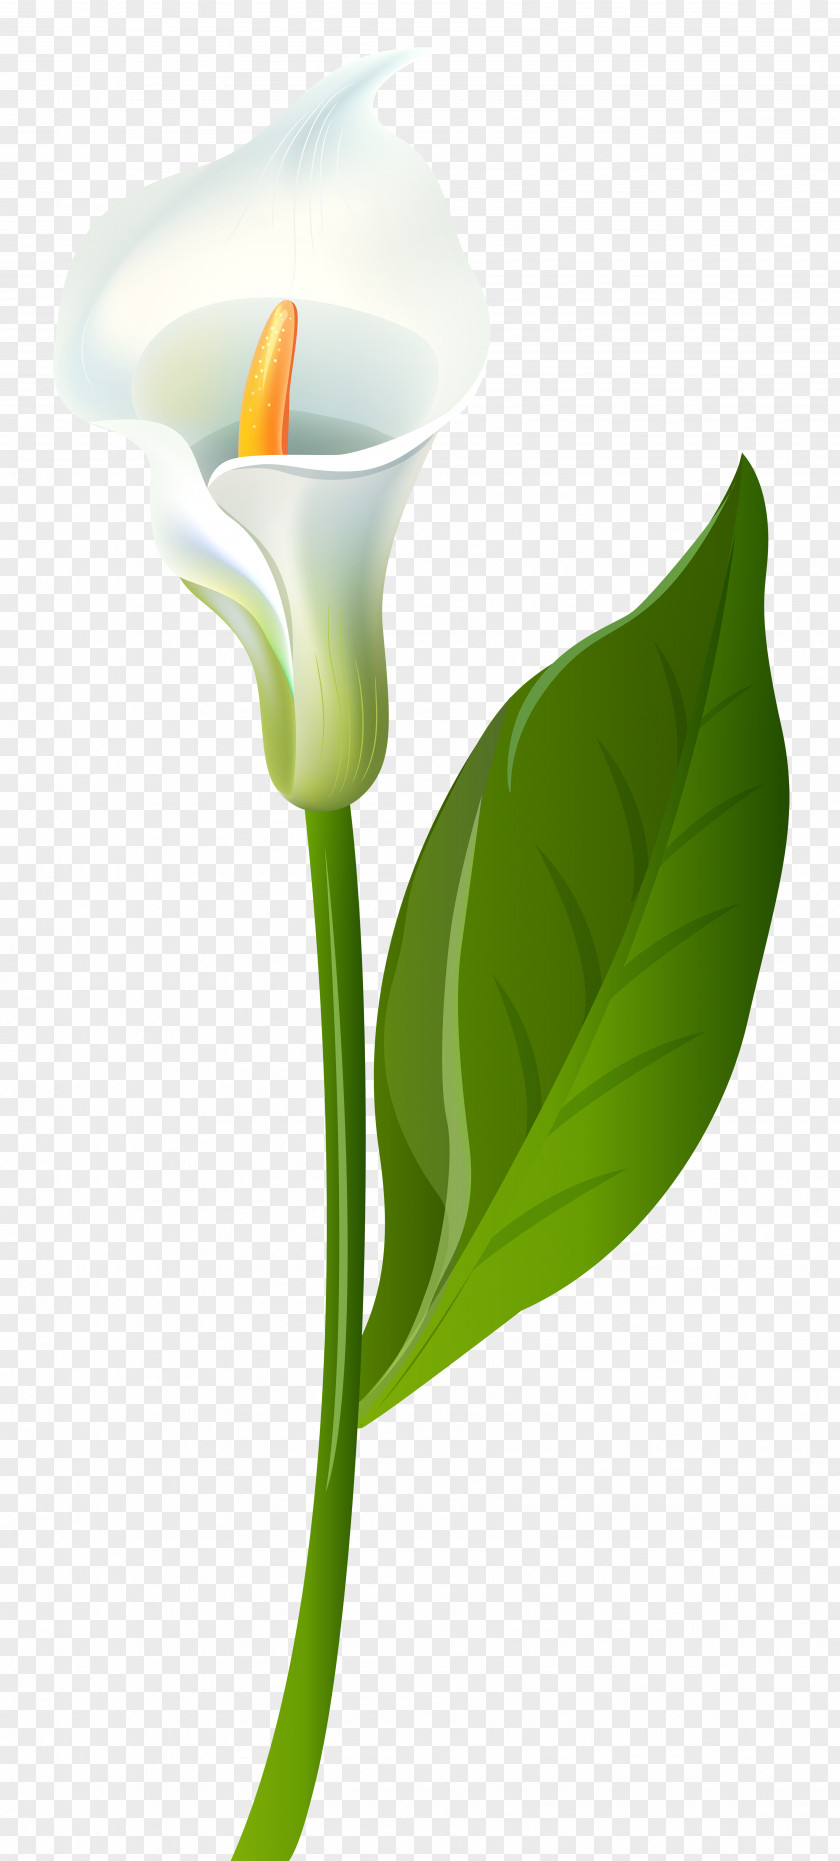 Calla Lily Transparent Clip Art Image Leaf Flower Plant Stem Green PNG